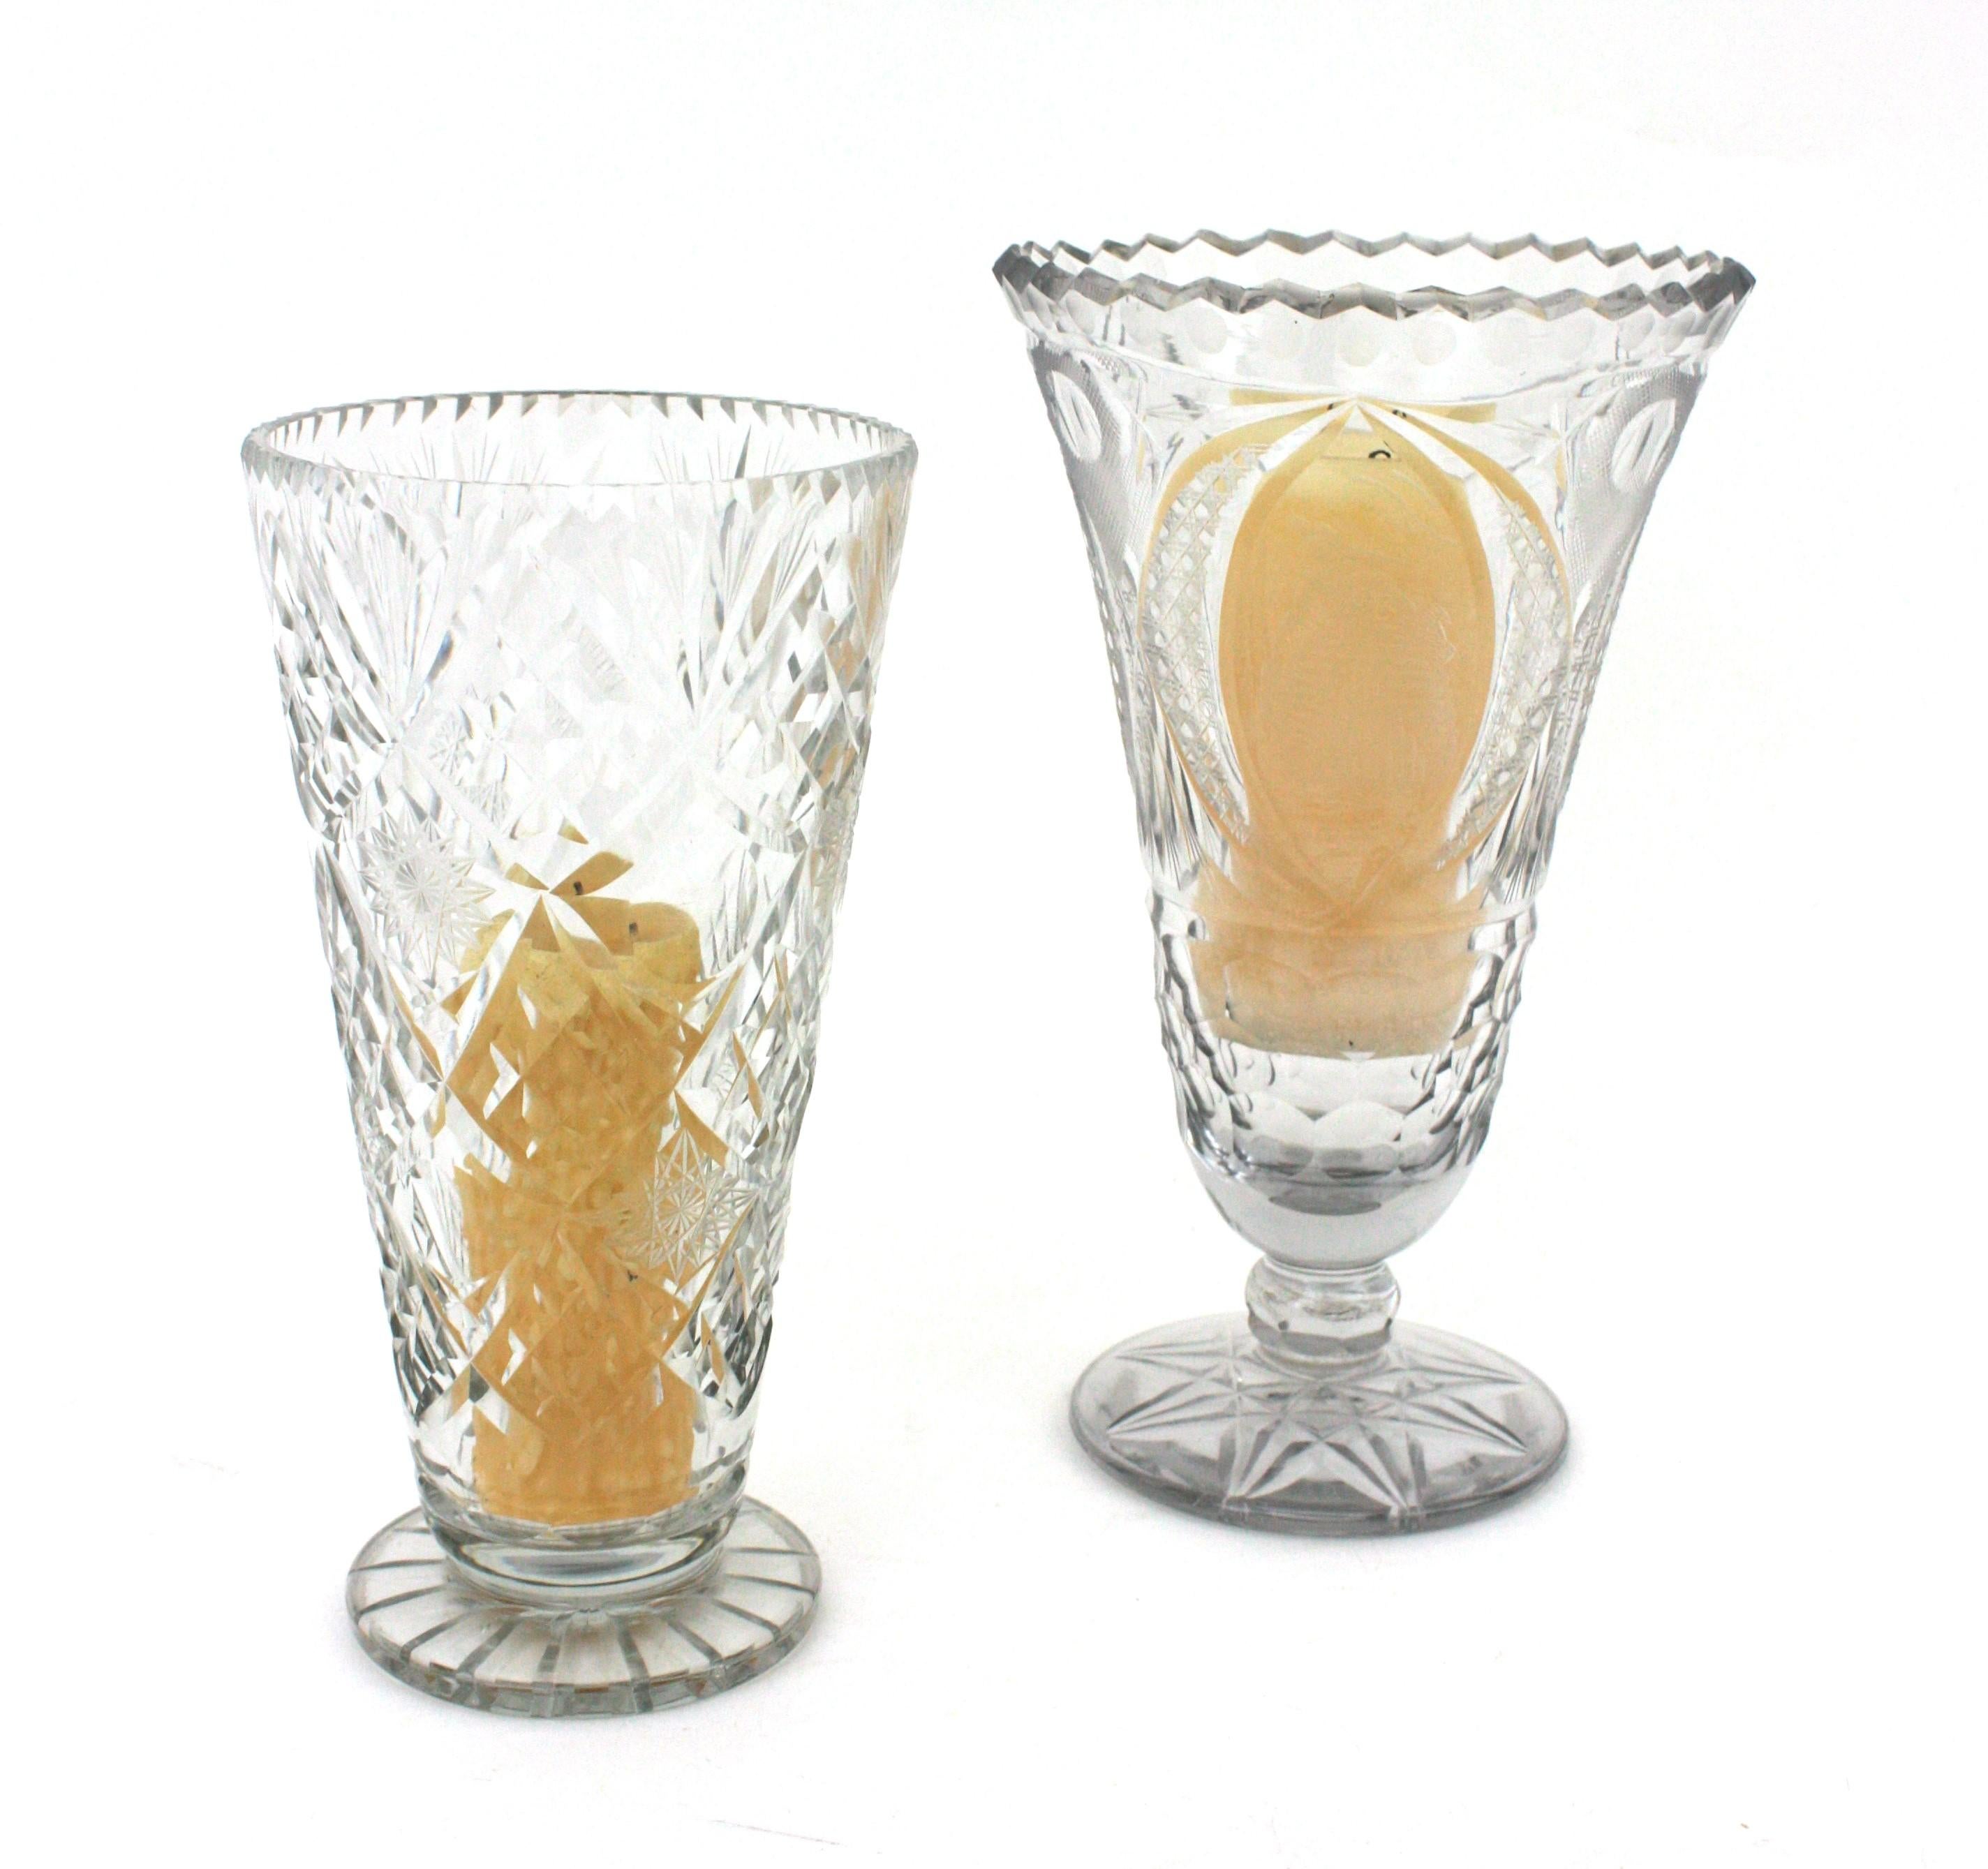 Paire de vases en cristal taillé avec des sommets festonnés et dentelés. Espagne, années 1930.
Tous deux sont finement exécutés avec des motifs de cristal taillé très détaillés.
Chacune présente un motif différent en cristal taillé. Toutes deux sont